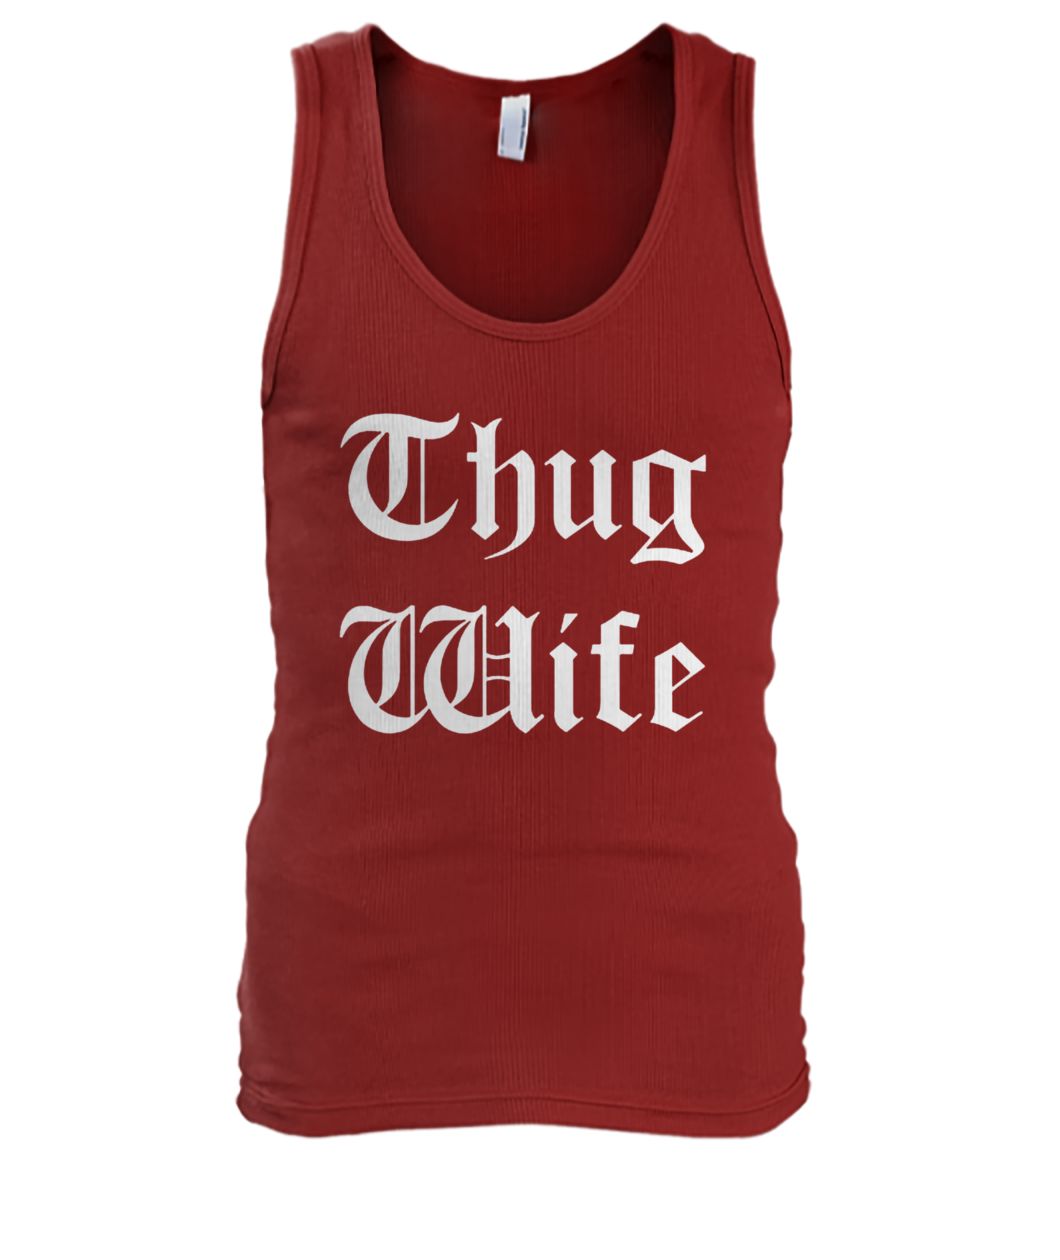 Thug wife men's tank top